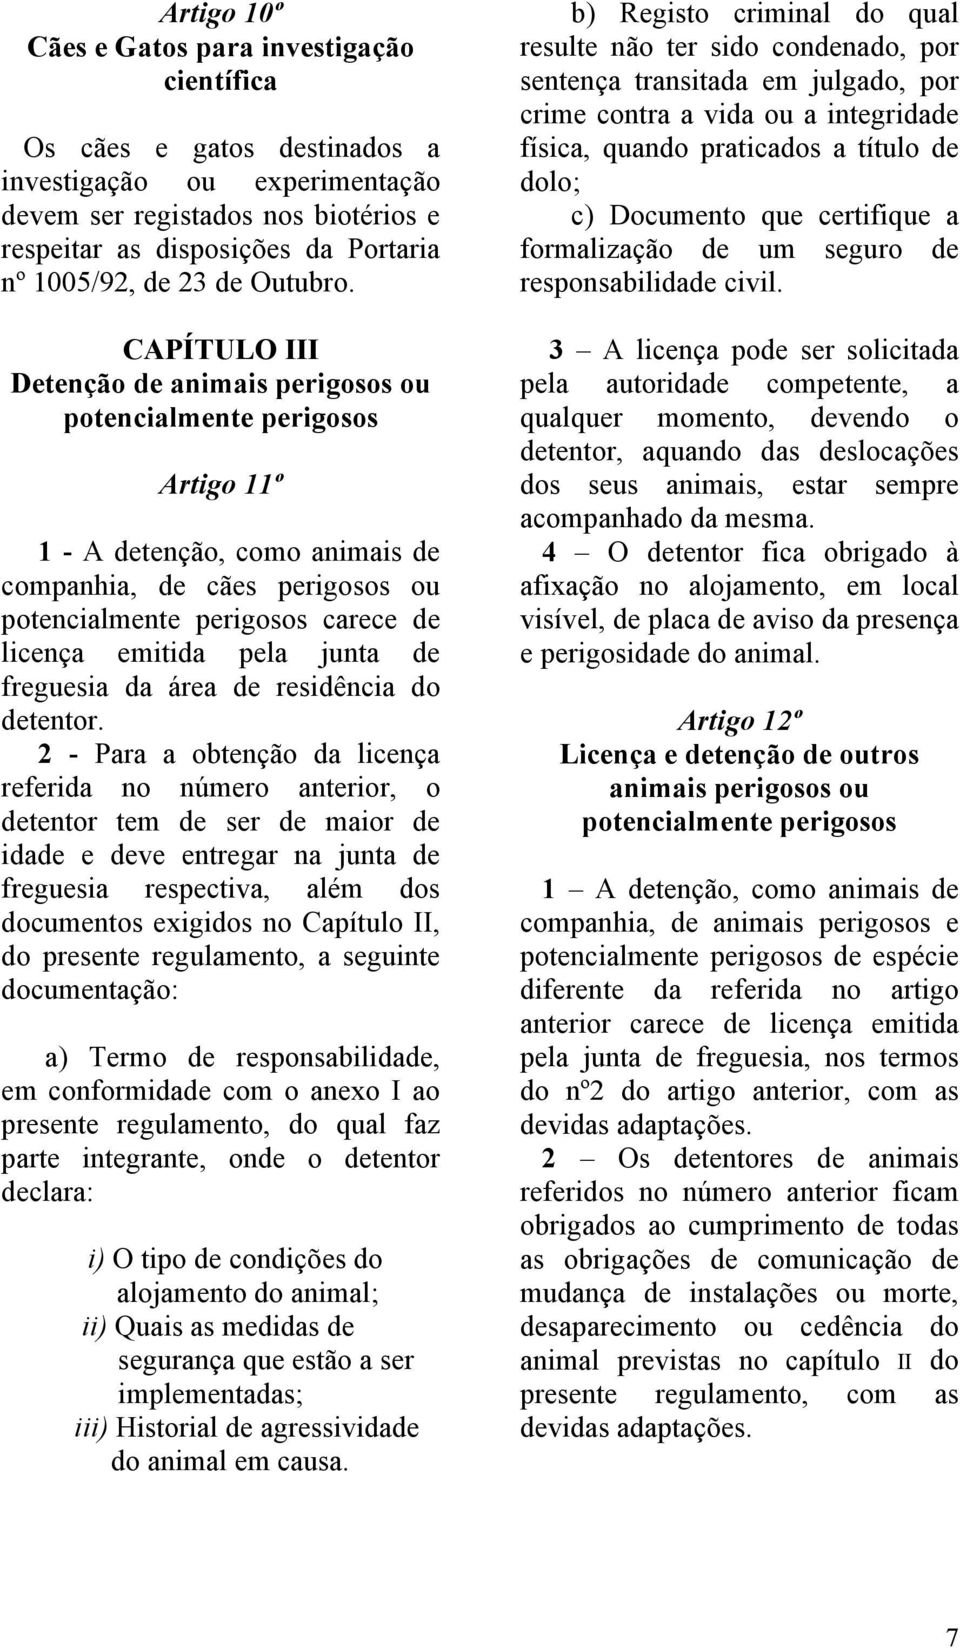 CAPÍTULO III Detenção de animais perigosos ou potencialmente perigosos Artigo 11º 1 - A detenção, como animais de companhia, de cães perigosos ou potencialmente perigosos carece de licença emitida